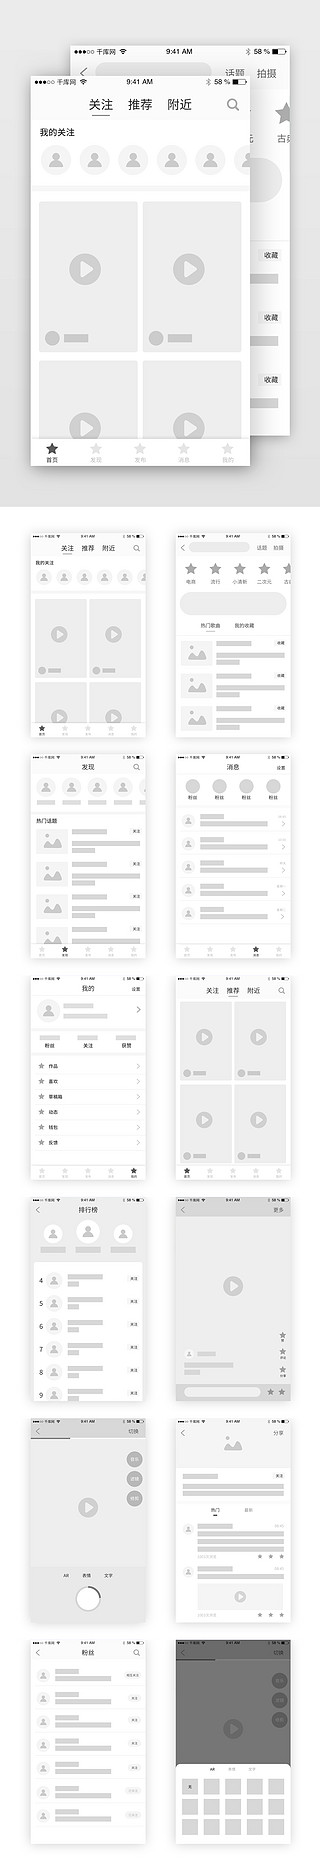 视频直播间封面UI设计素材_短视频直播排版模板原型图